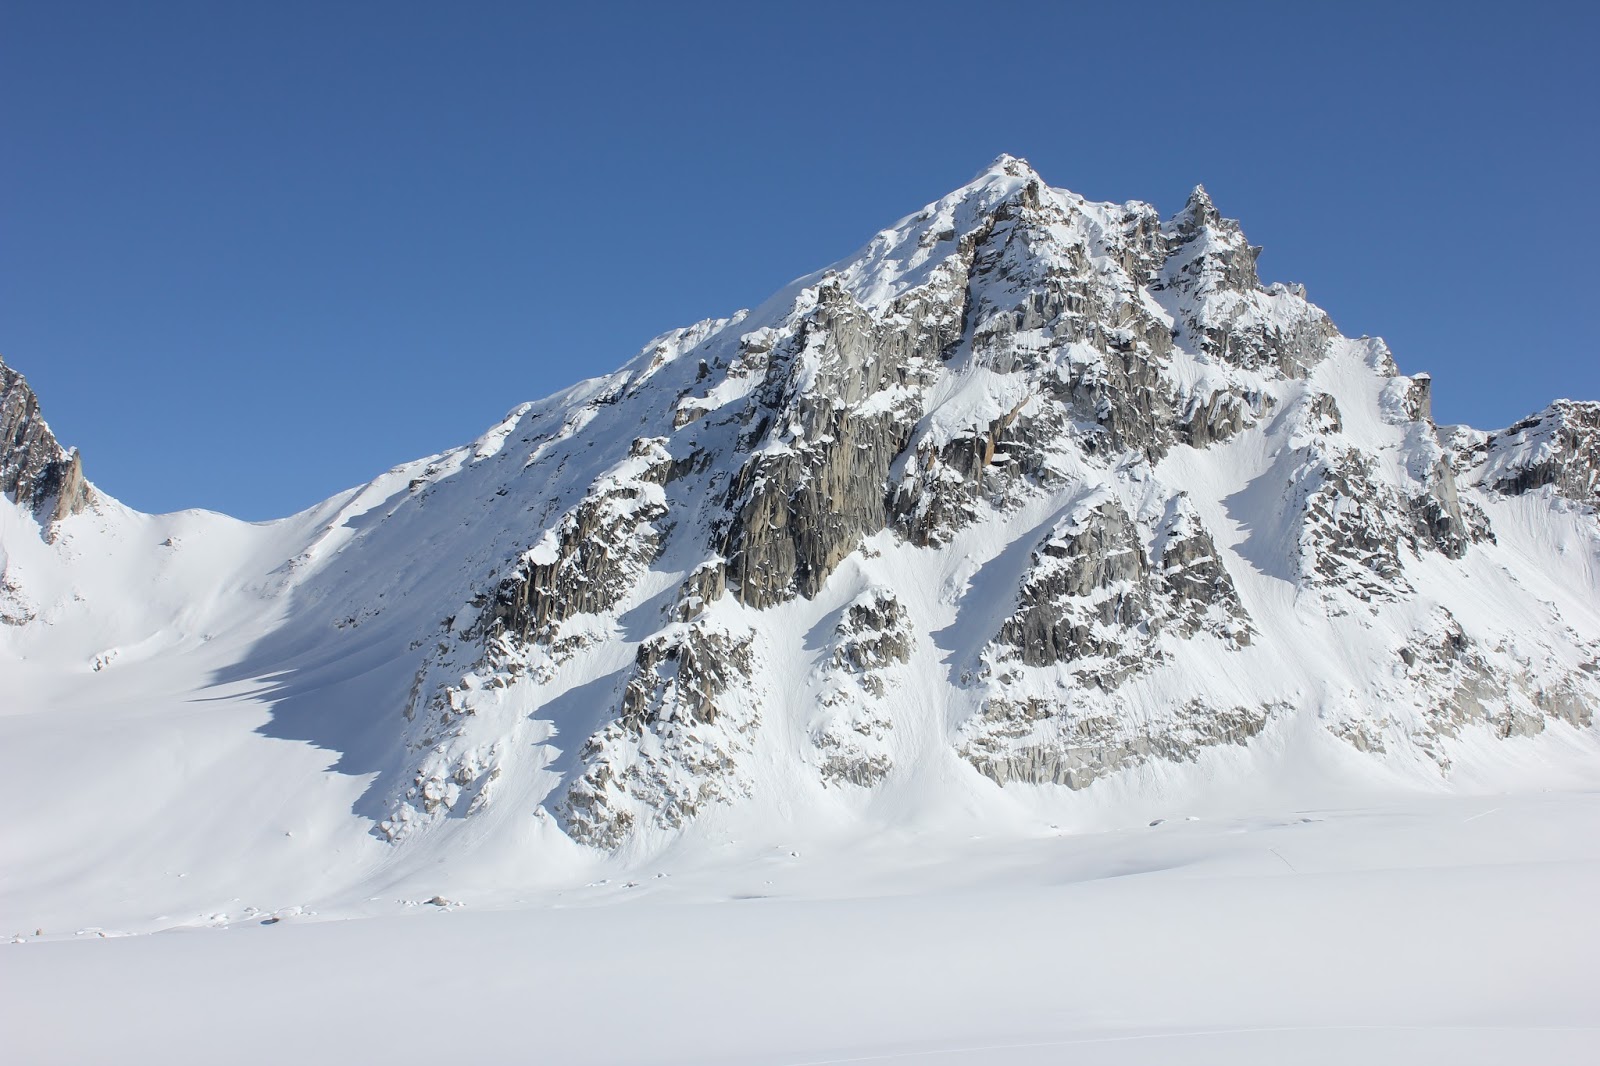 пик Пророк (Prophet Peak) высотой 2100 метров. Восхождение проходило по гребню с левой стороны